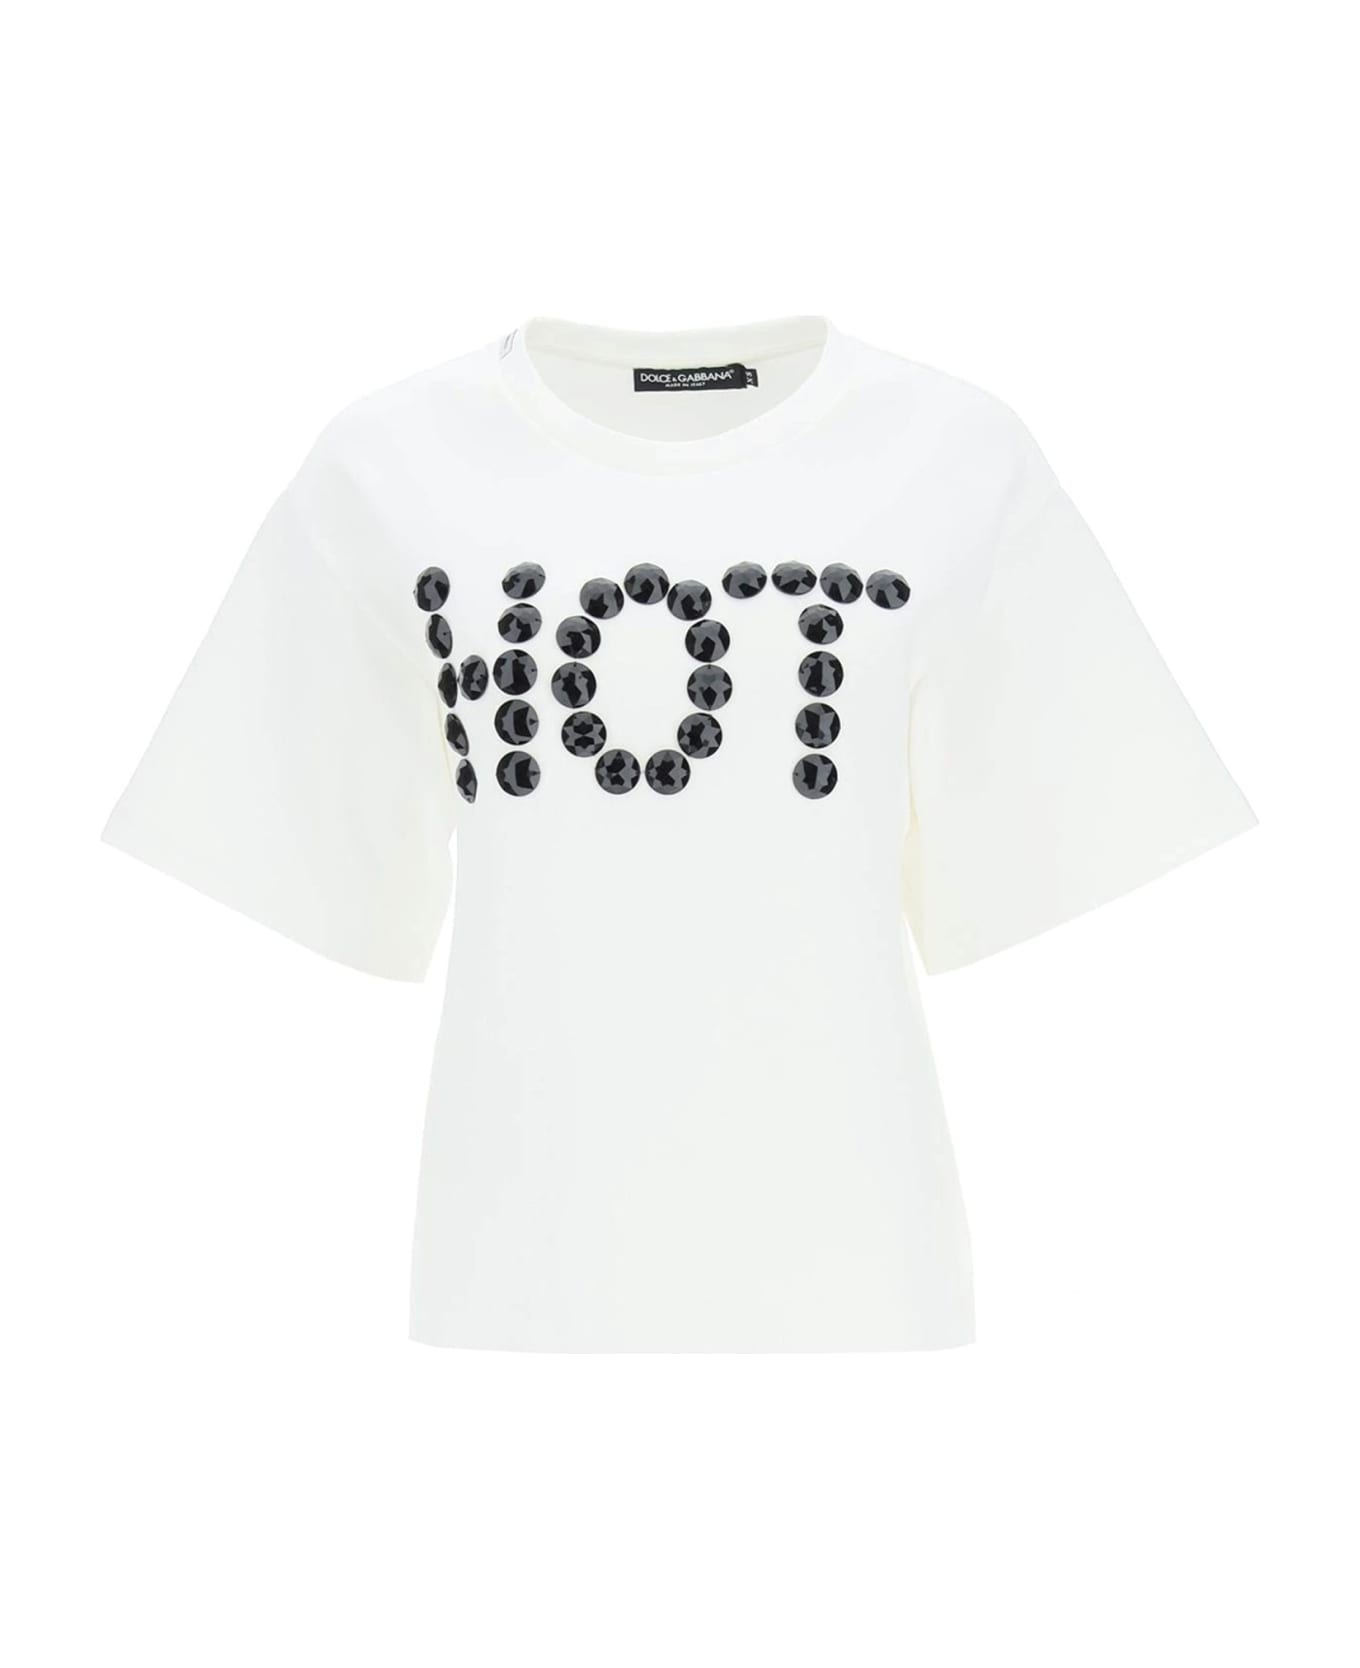 Dolce & Gabbana Hot T-shirt - White Tシャツ